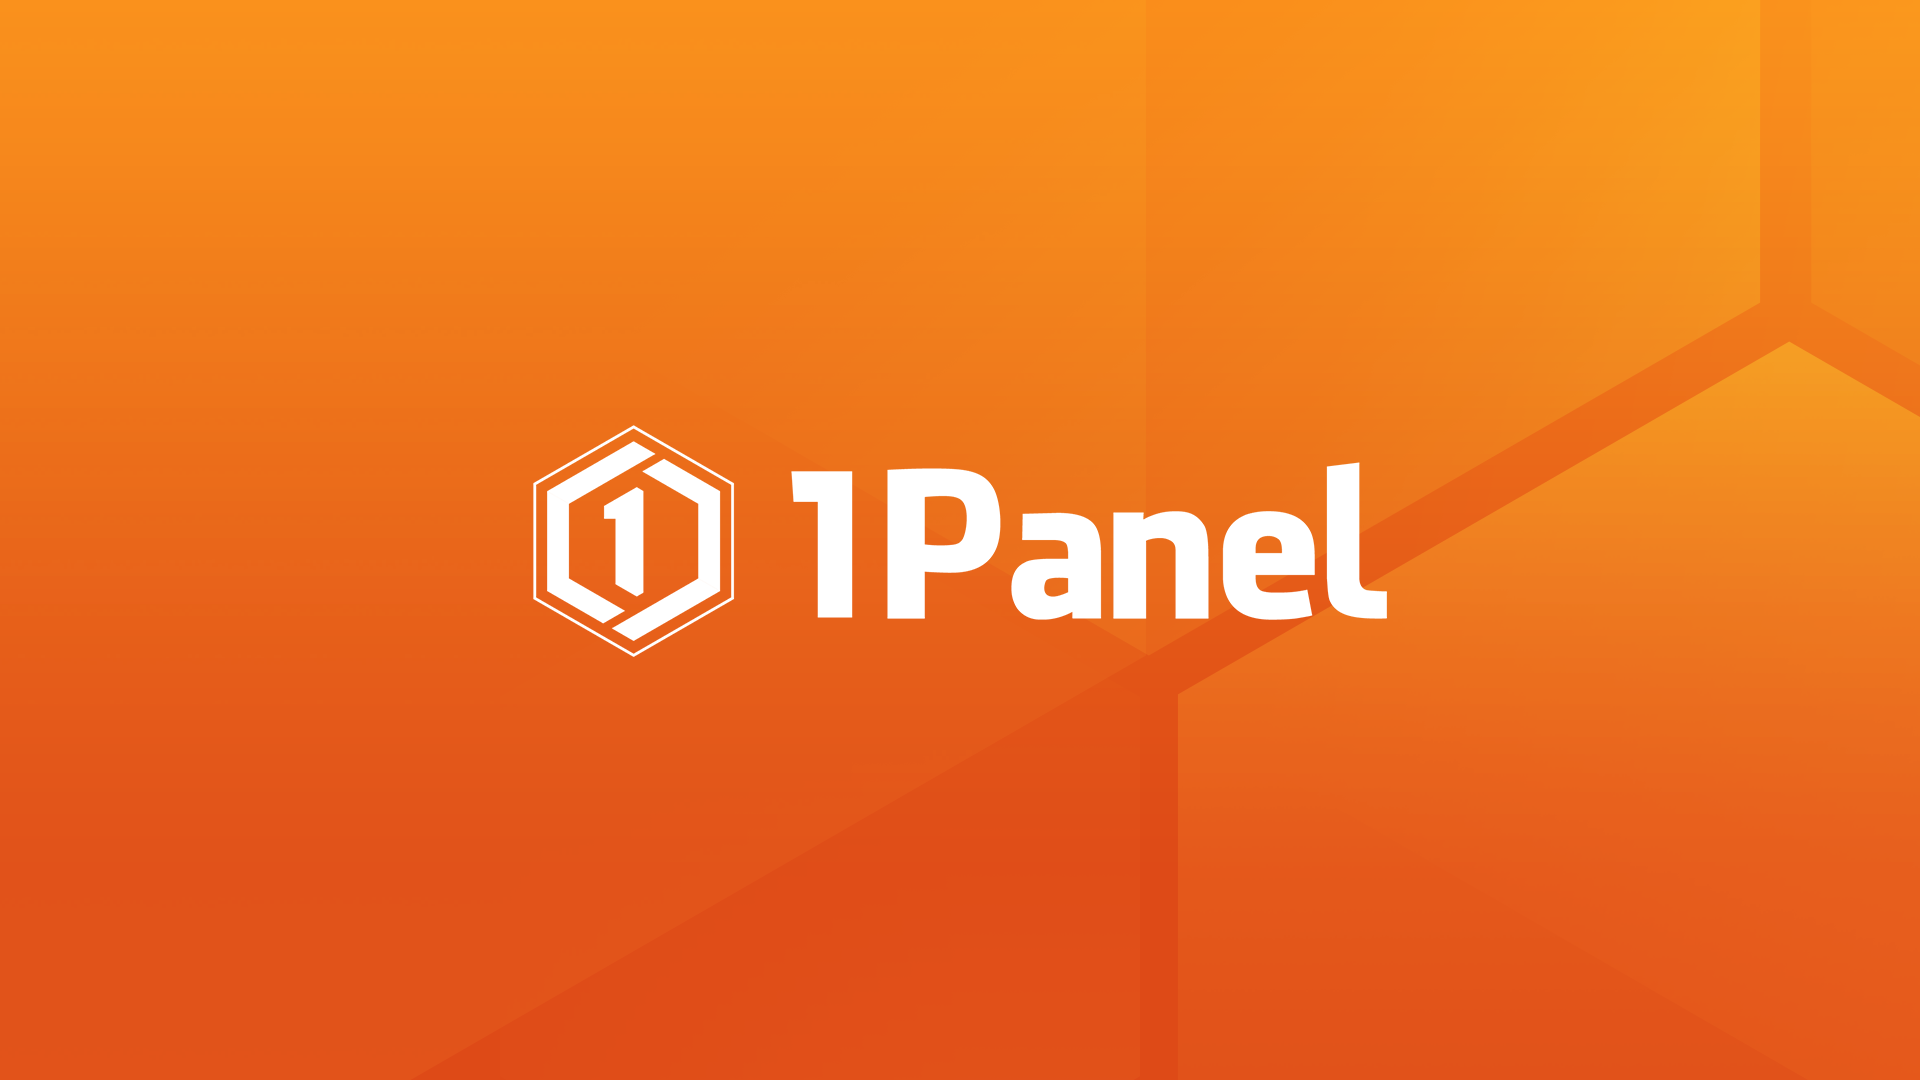 网友测评丨1Panel不是纯粹的服务器管理面板